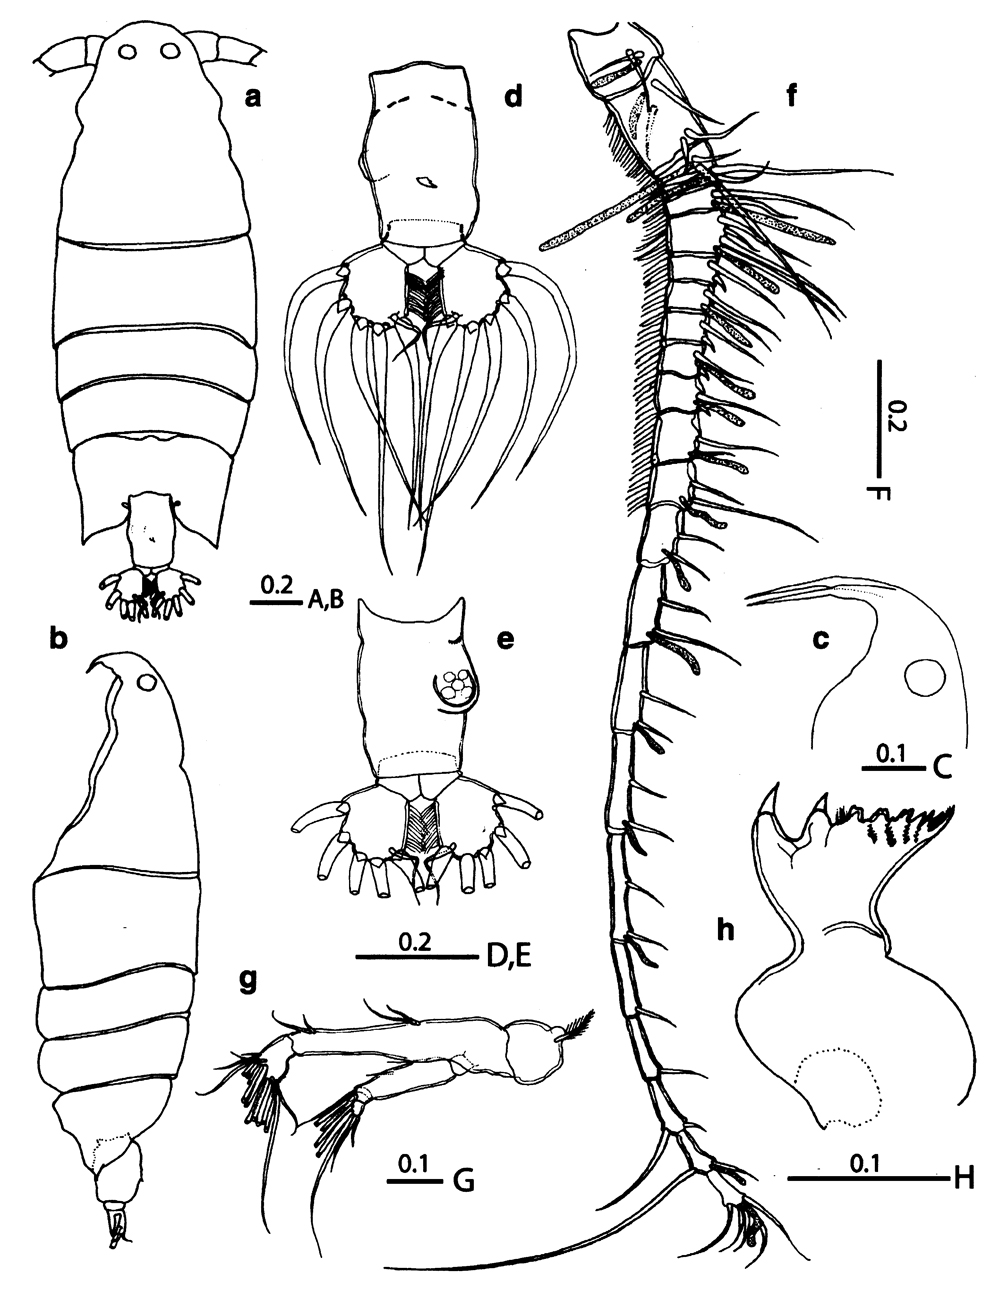 Espèce Labidocera boxshalli - Planche 1 de figures morphologiques